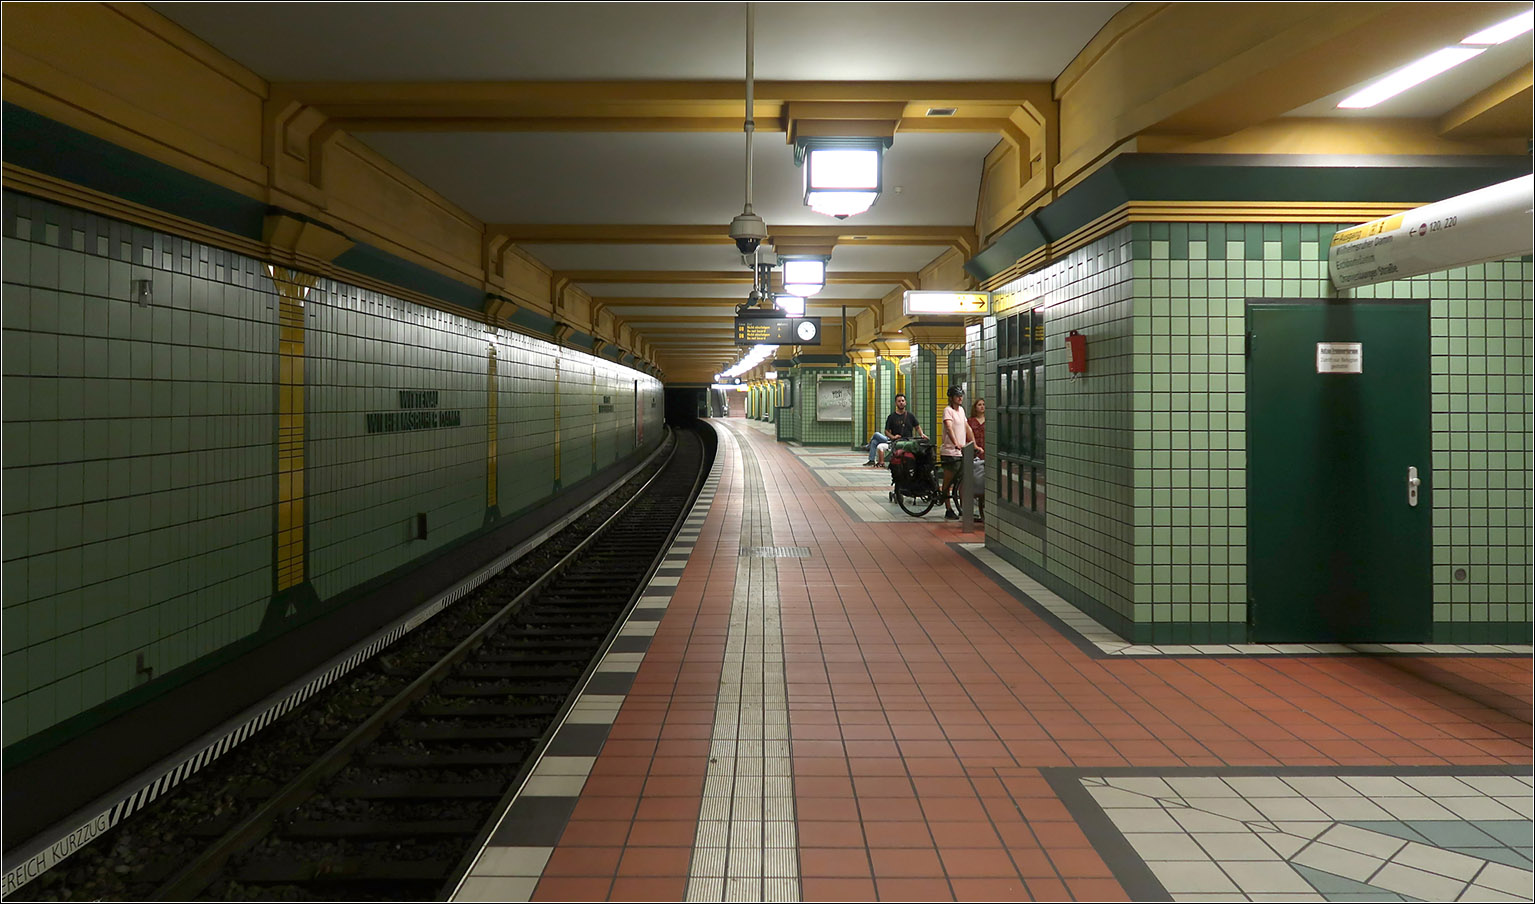 Verlängerung erwünscht - 

Seit 1994 endet die U8 im Norden an der Station Wittenau, wo zur S-Bahn umgestiegen werden kann. Eine Weiterführung der Linie in die Trabantenstadt Märkische Viertel ist schon lange geplant, wurde aber bisher nicht umgesetzt. Vielleicht die vordringlichste Streckenerweiterung bei der Berliner U-Bahn.

Die architektonische Ausgestaltung der Station entspricht nicht so gang meinem Geschmack.

14.07.2023 (M)